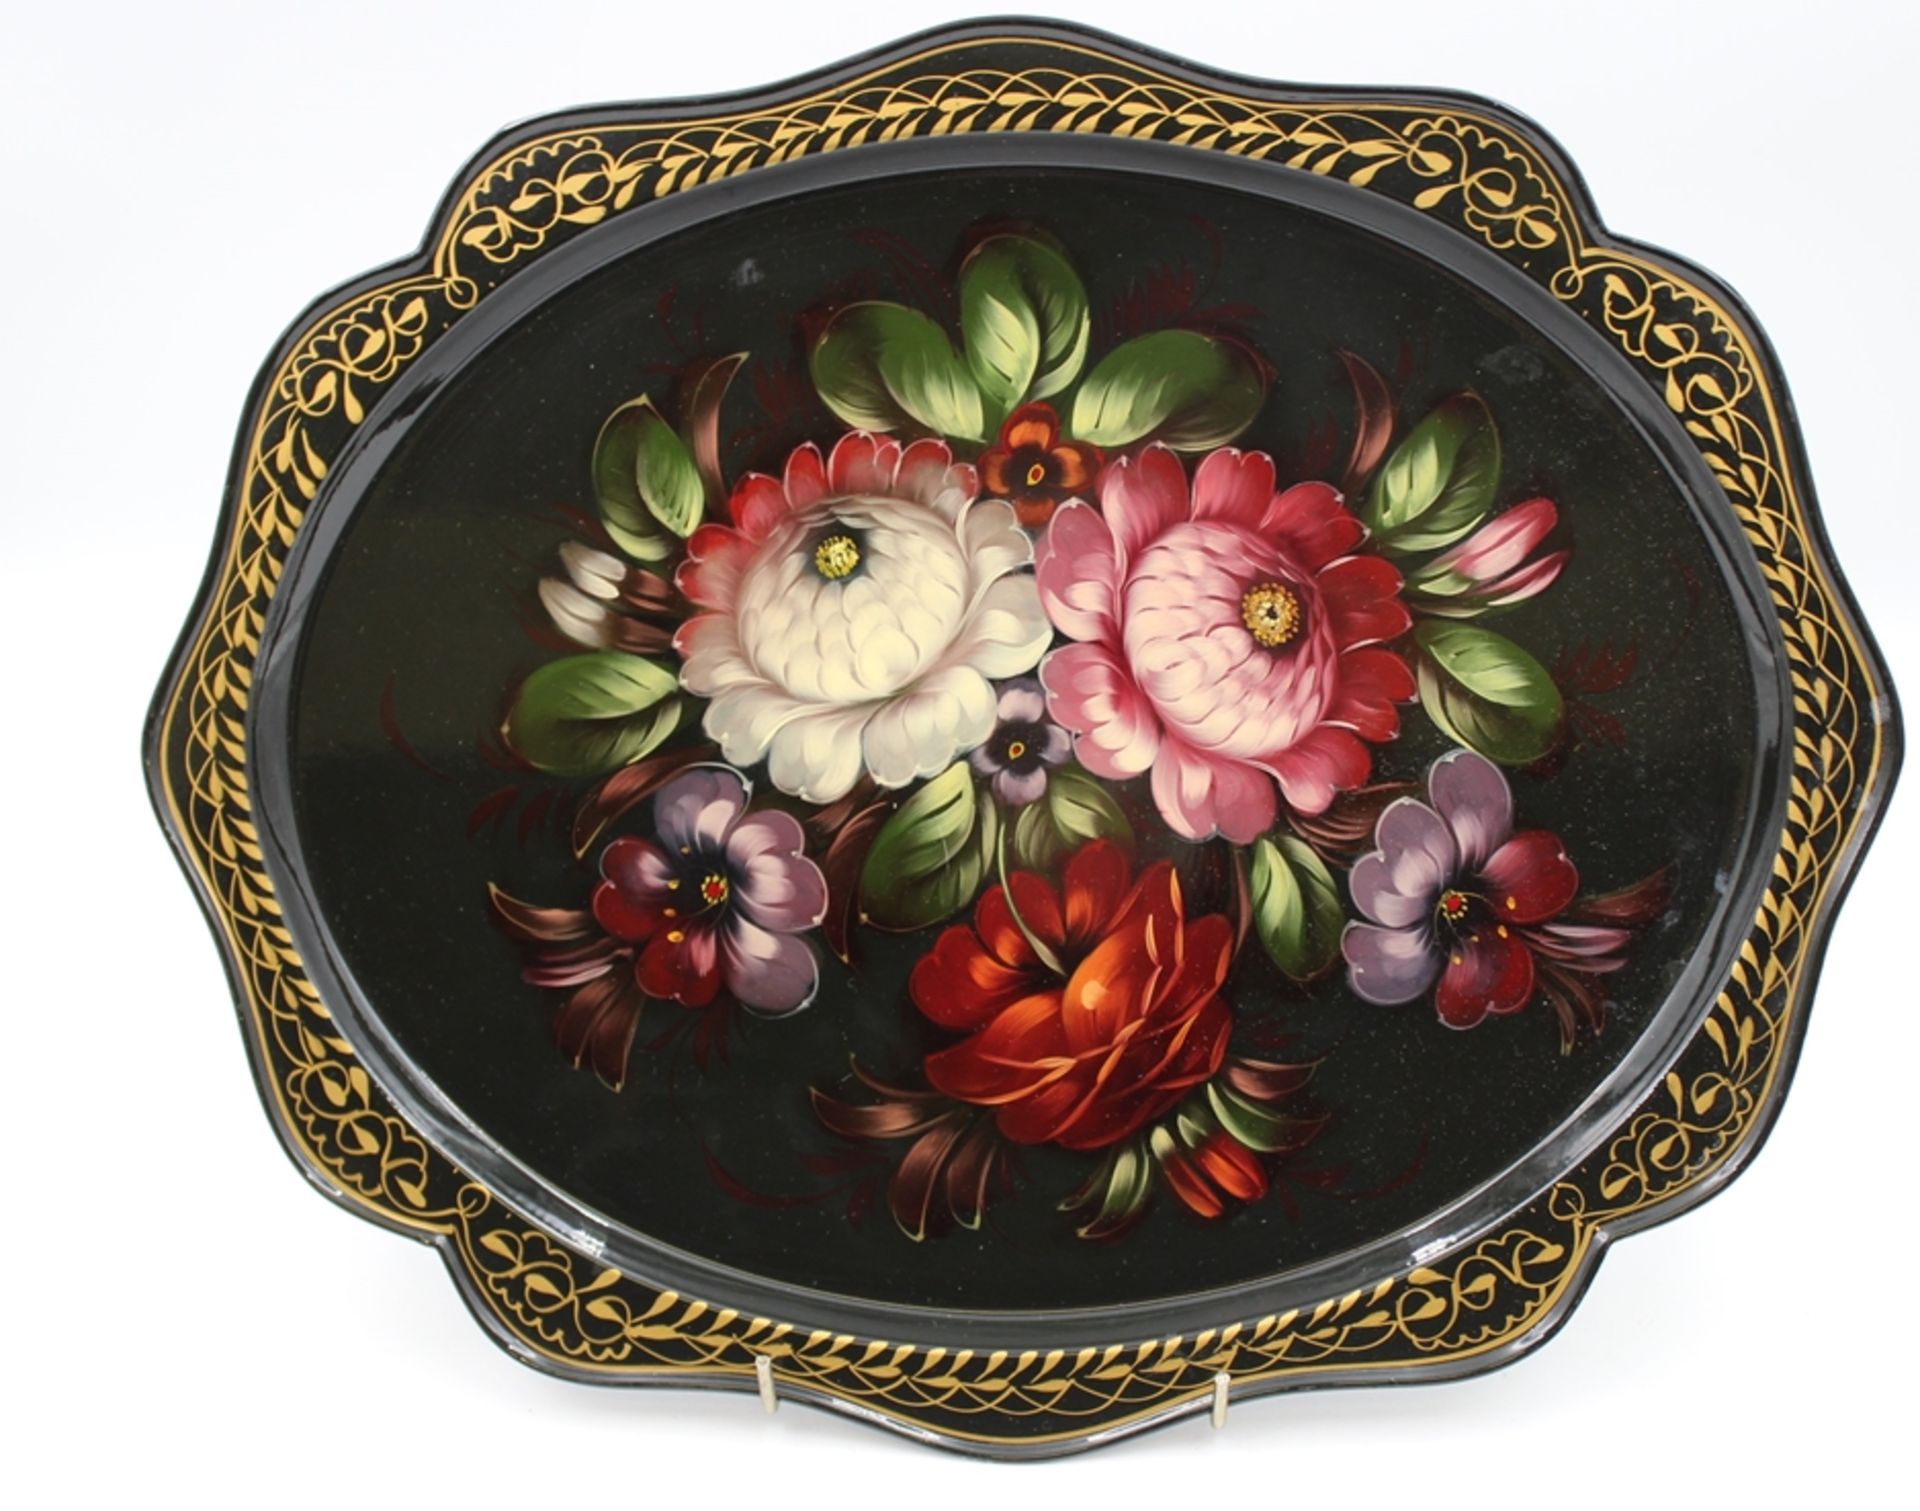 ovales russisches Tablett, floral bemalt, verso gemarkt, 31 x 38cm.